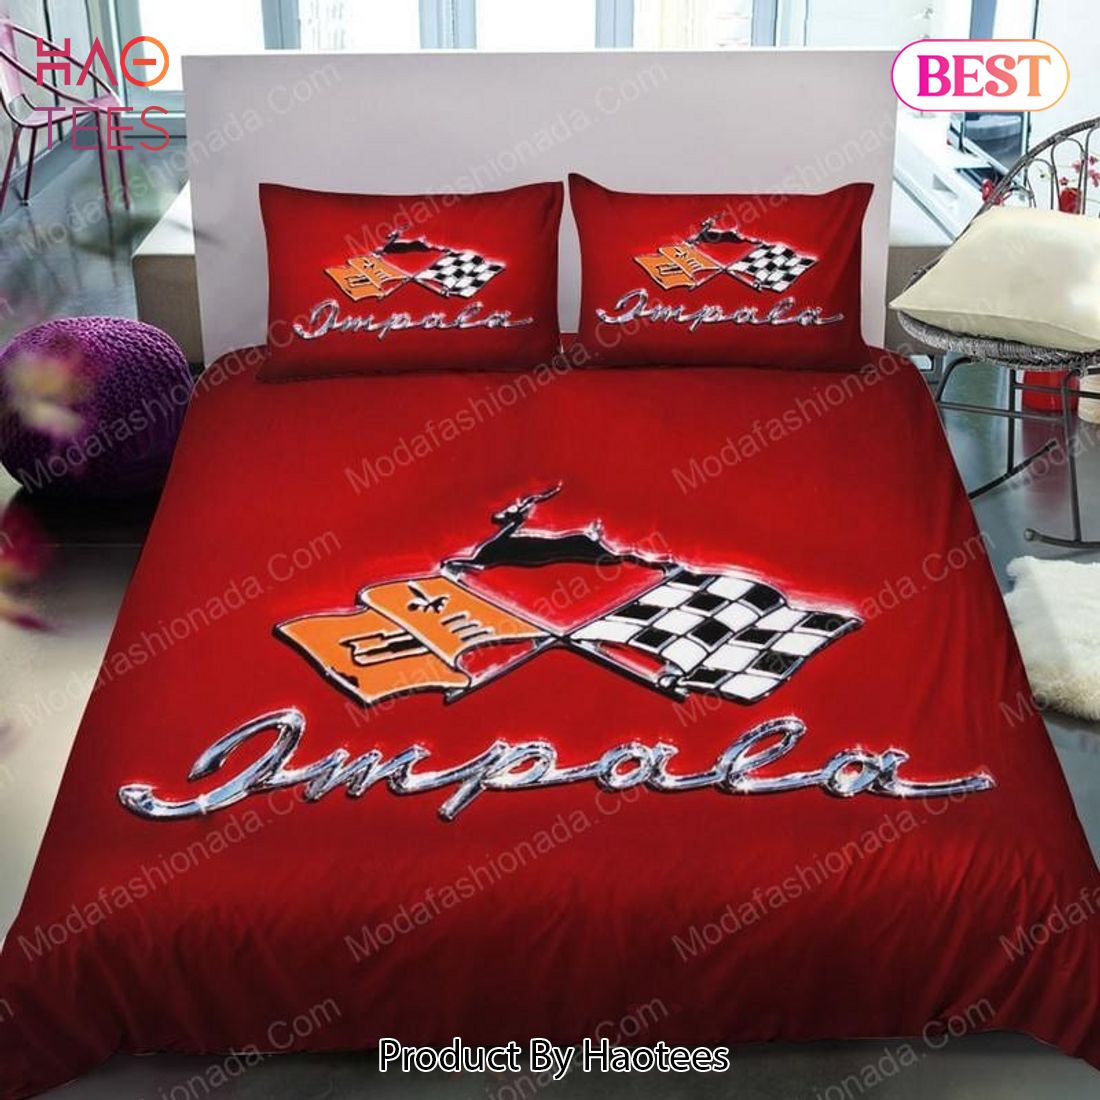 Buy 1958 Chevrolet Impala Convertible Cars 27 Bedding Sets Bed Sets, Bedroom Sets, Comforter Sets, Duvet Cover, Bedspread